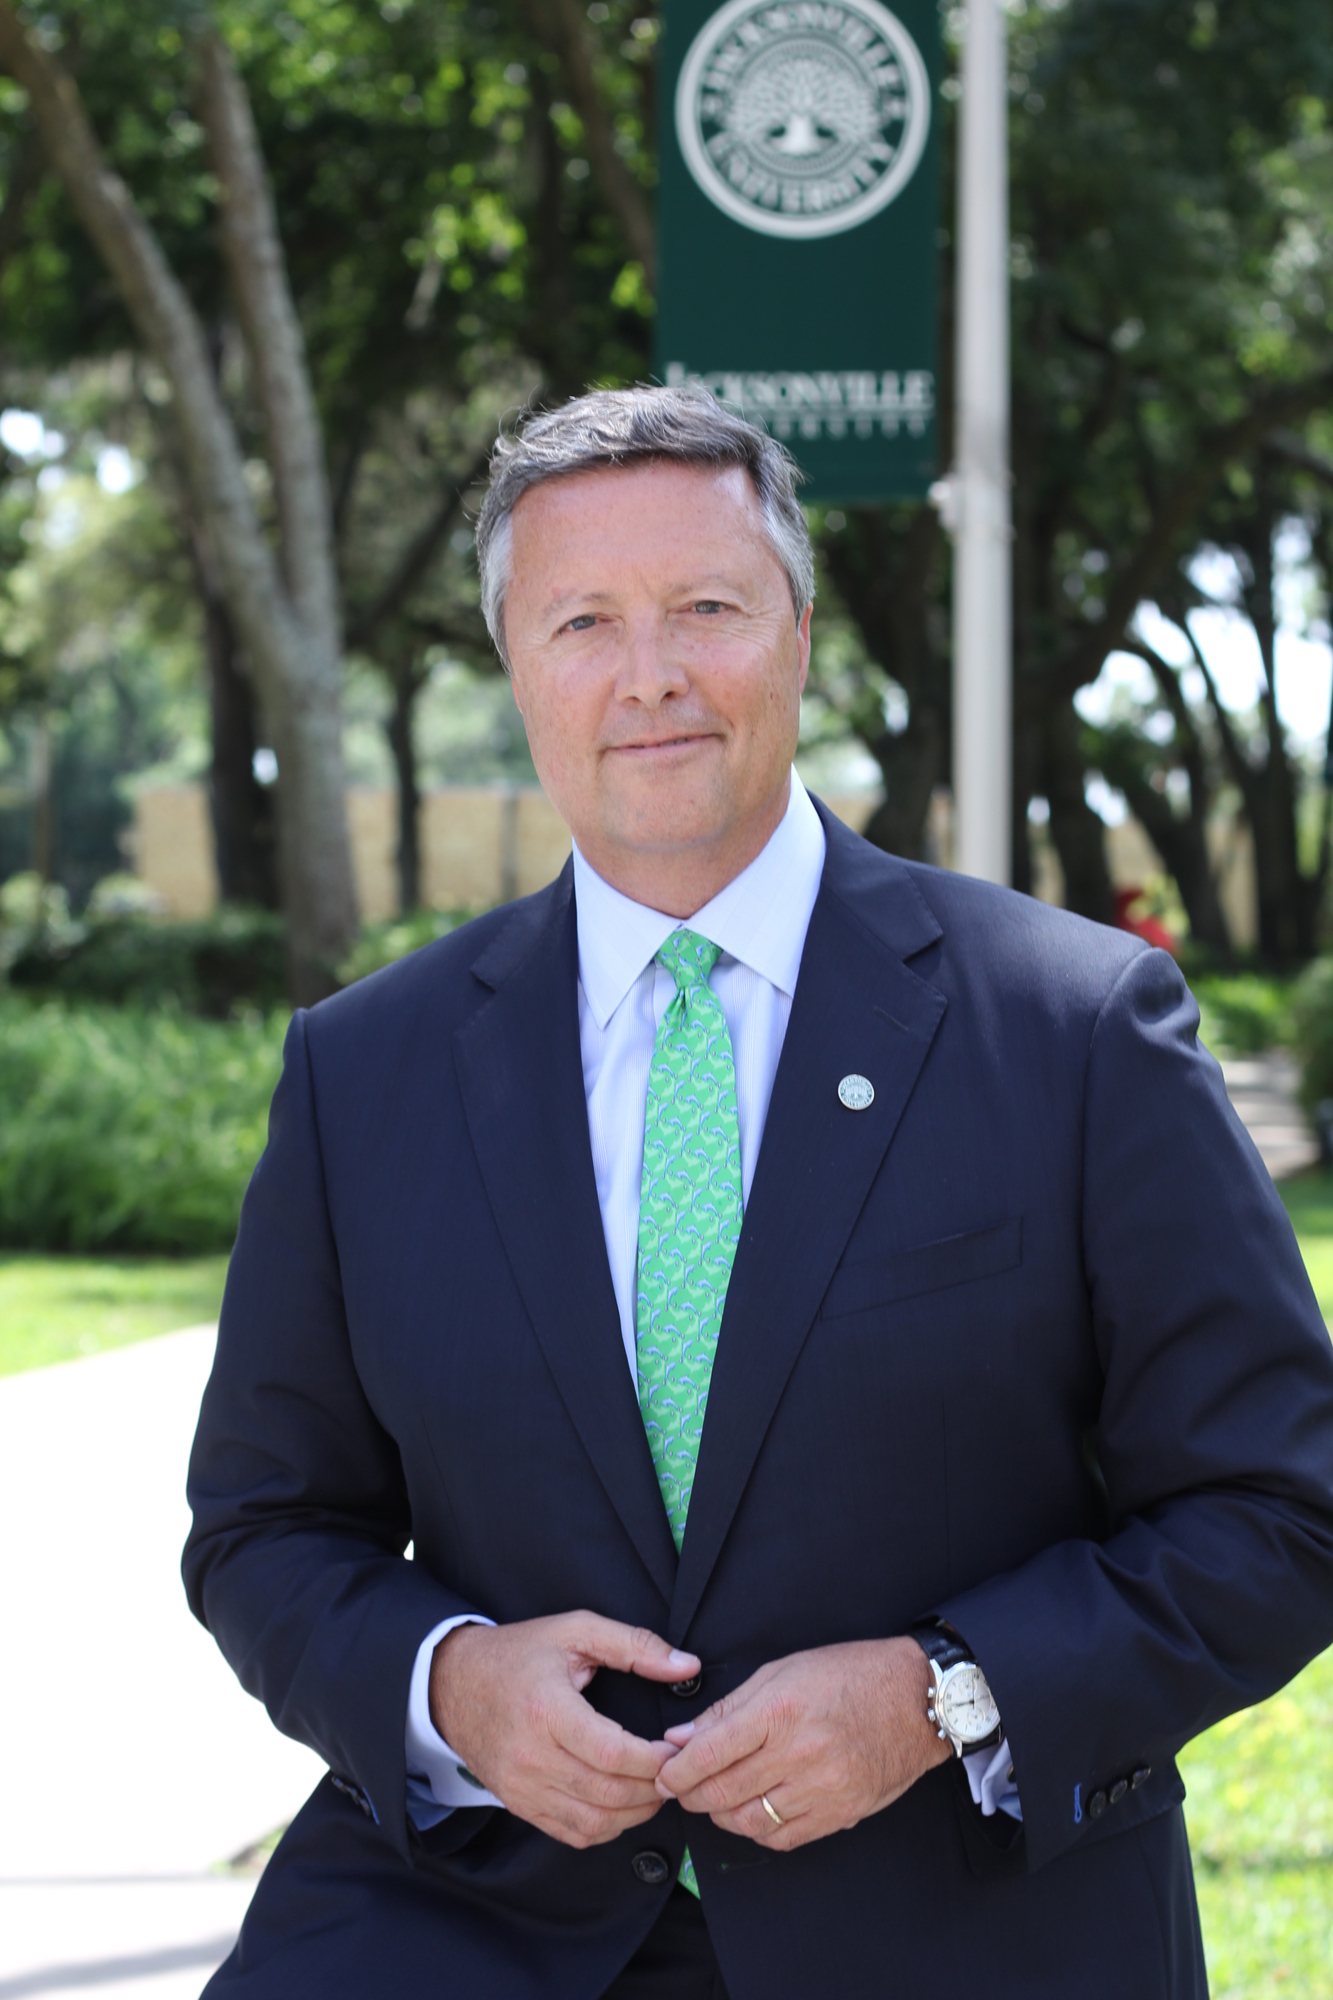 Jacksonville University President Tim Cost